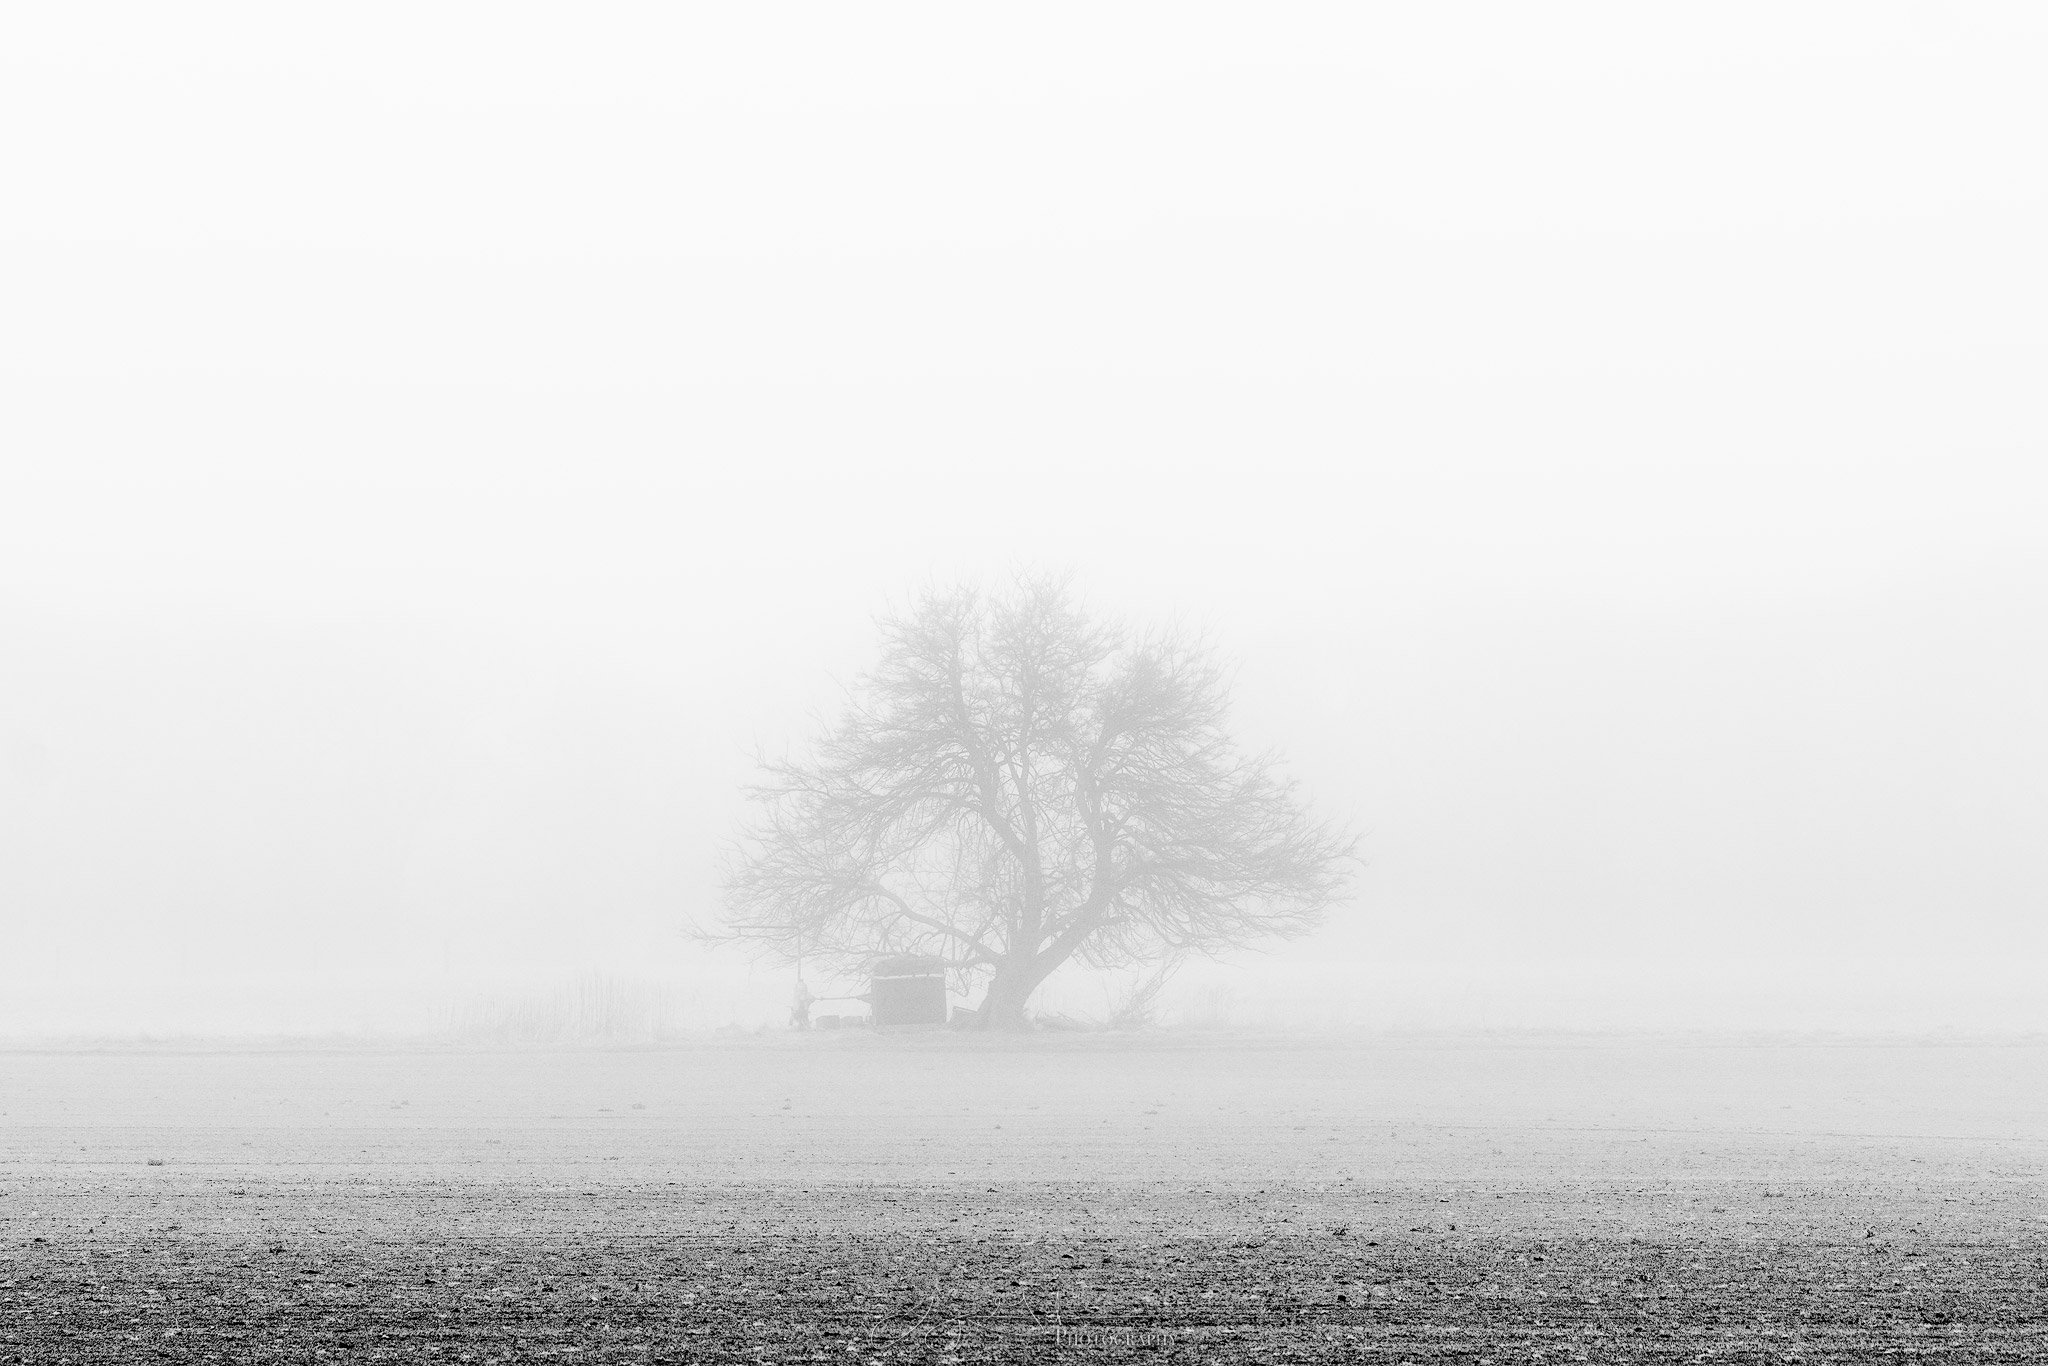 Pump-Tree-in-Fog-sharpened.jpg